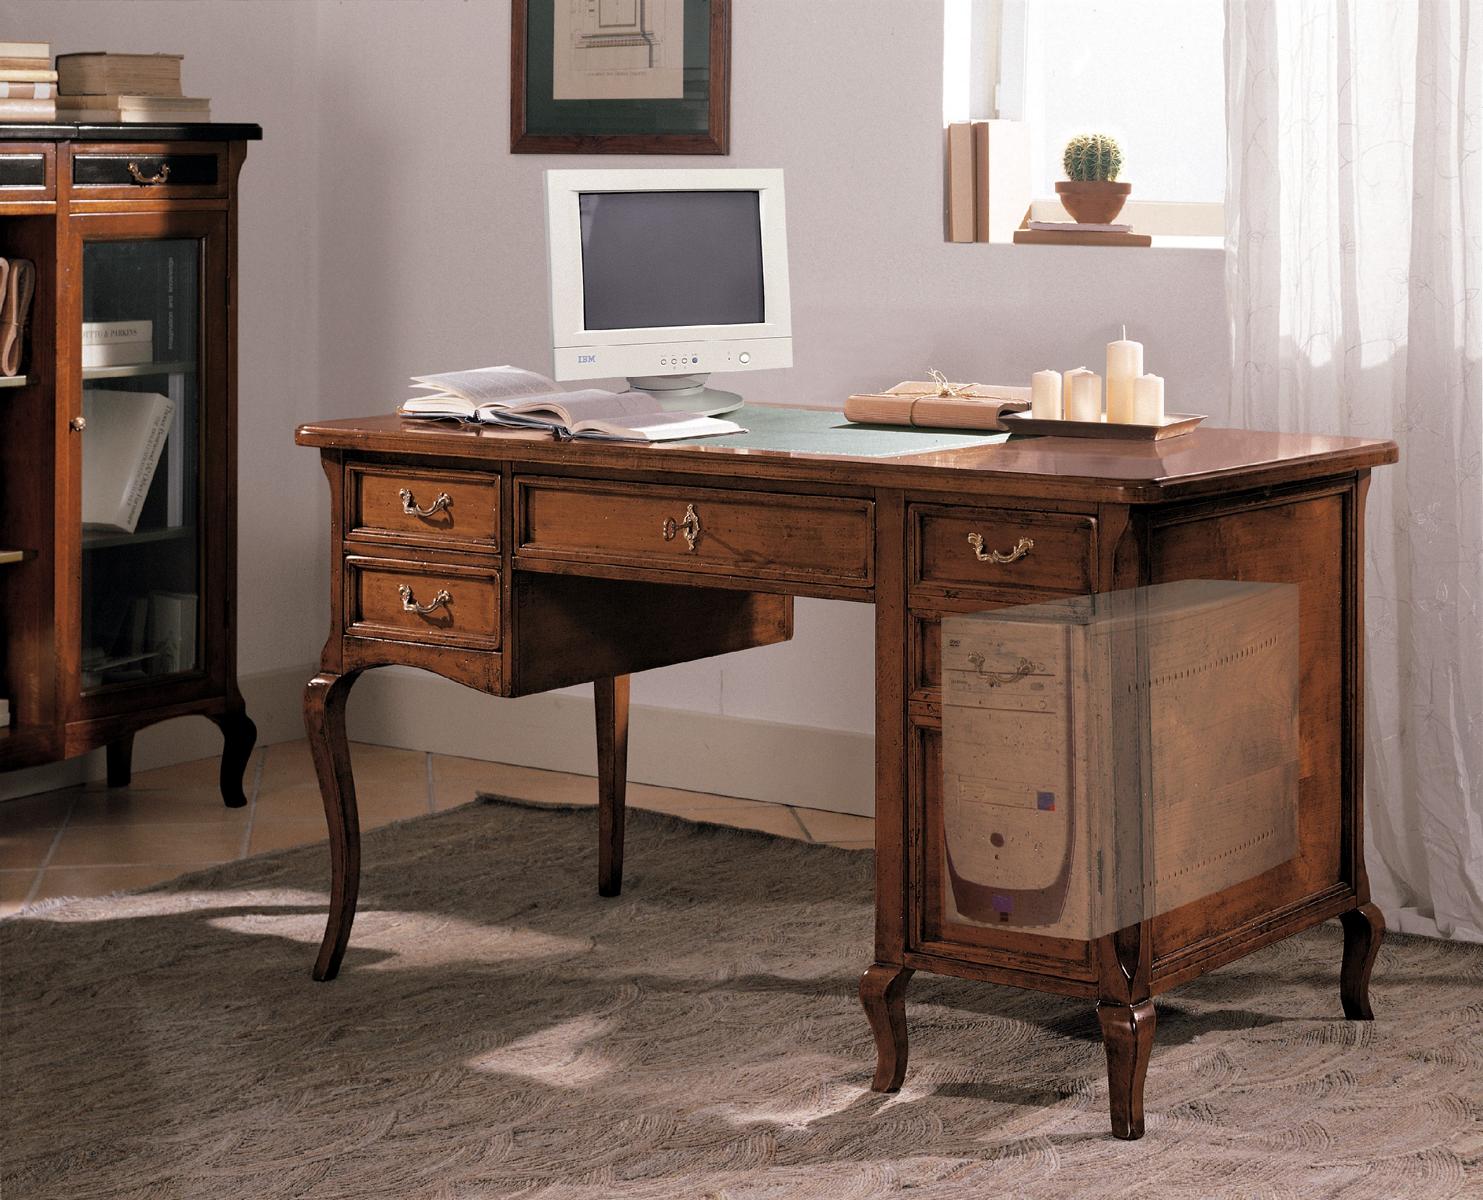 Büro Möbel Design Einrichtung Antik Holz Tisch Sekretär Schreib Tische Office